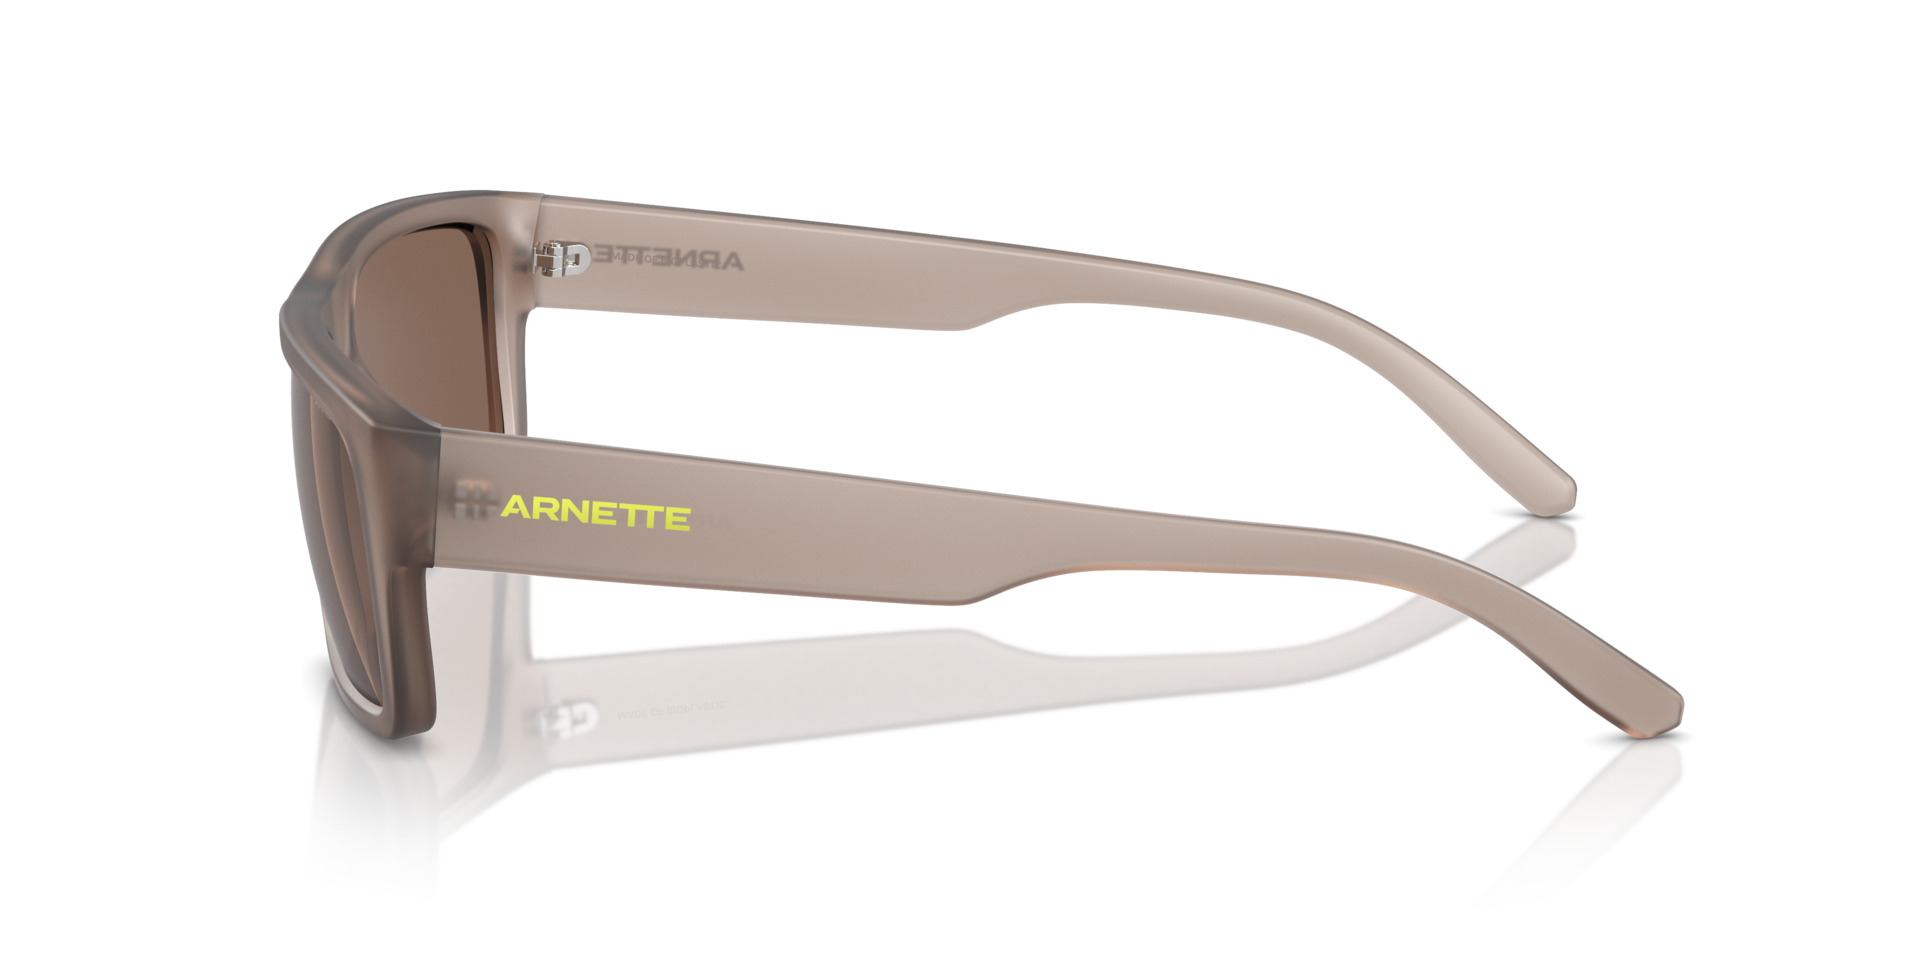 Das Bild zeigt die Sonnenbrille AN4338 290673 von der Marke Arnette in braun.